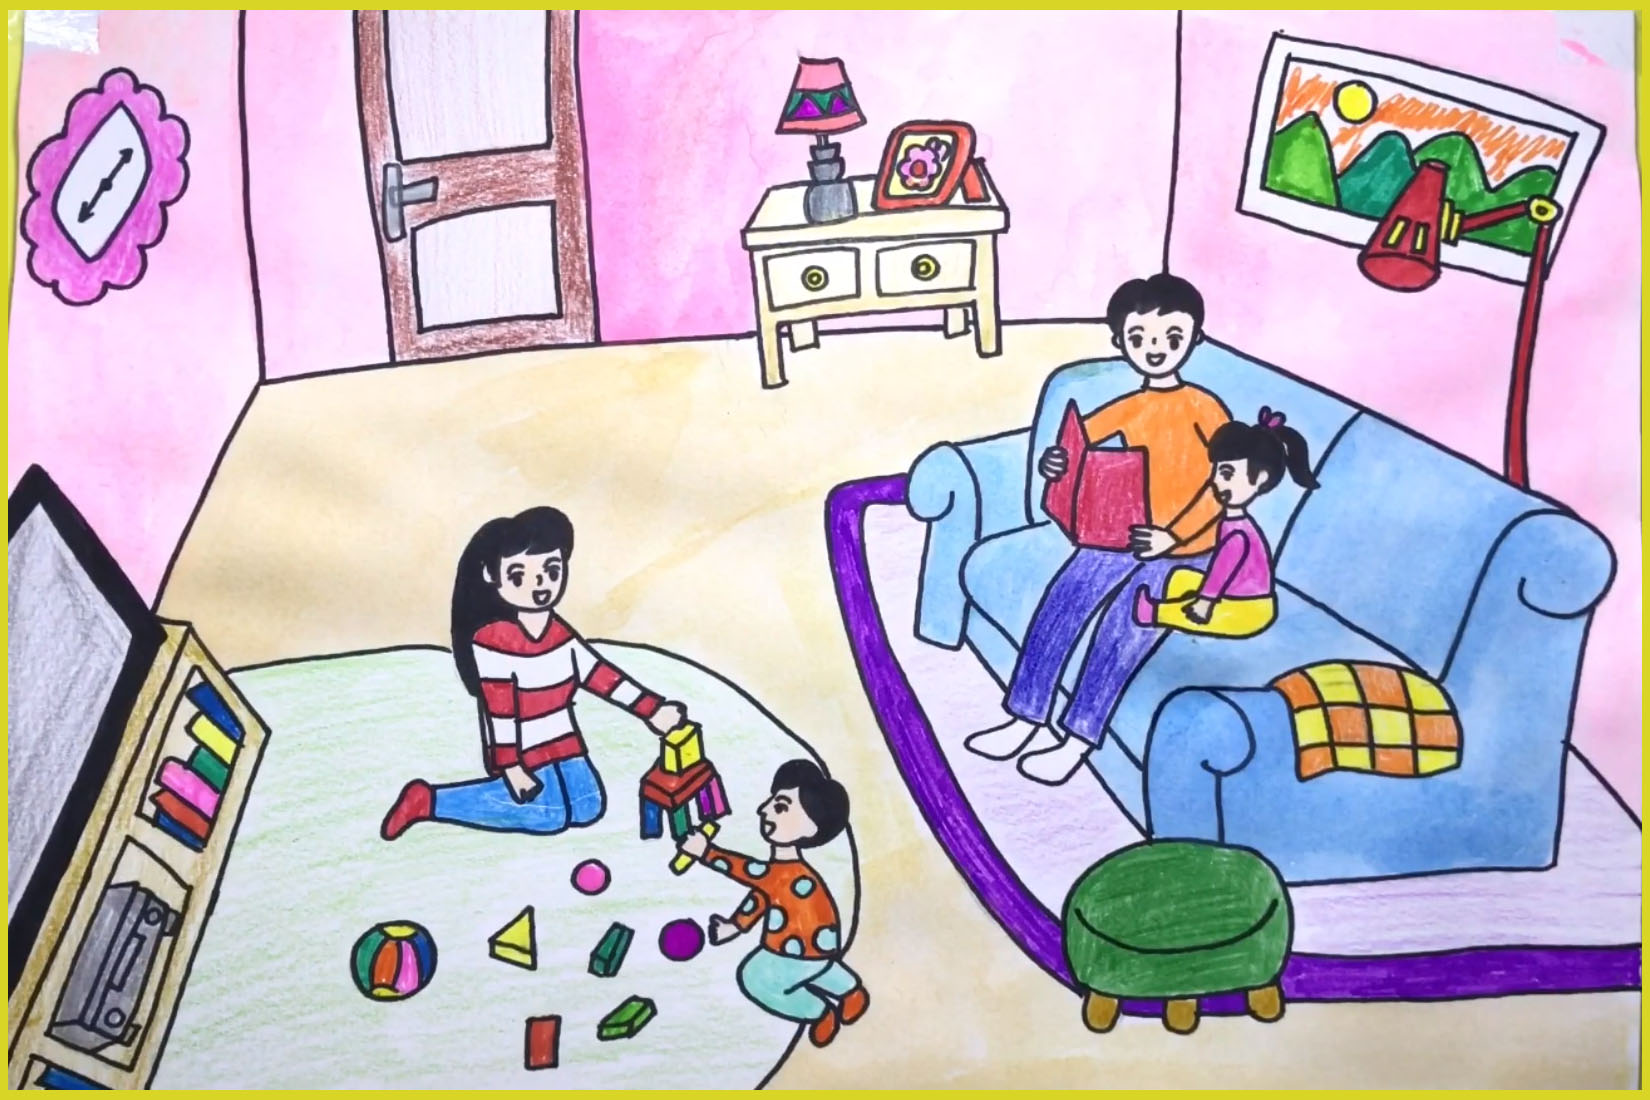 Mẫu tranh vẽ về đề tài gia đình hạnh phúc đẹp